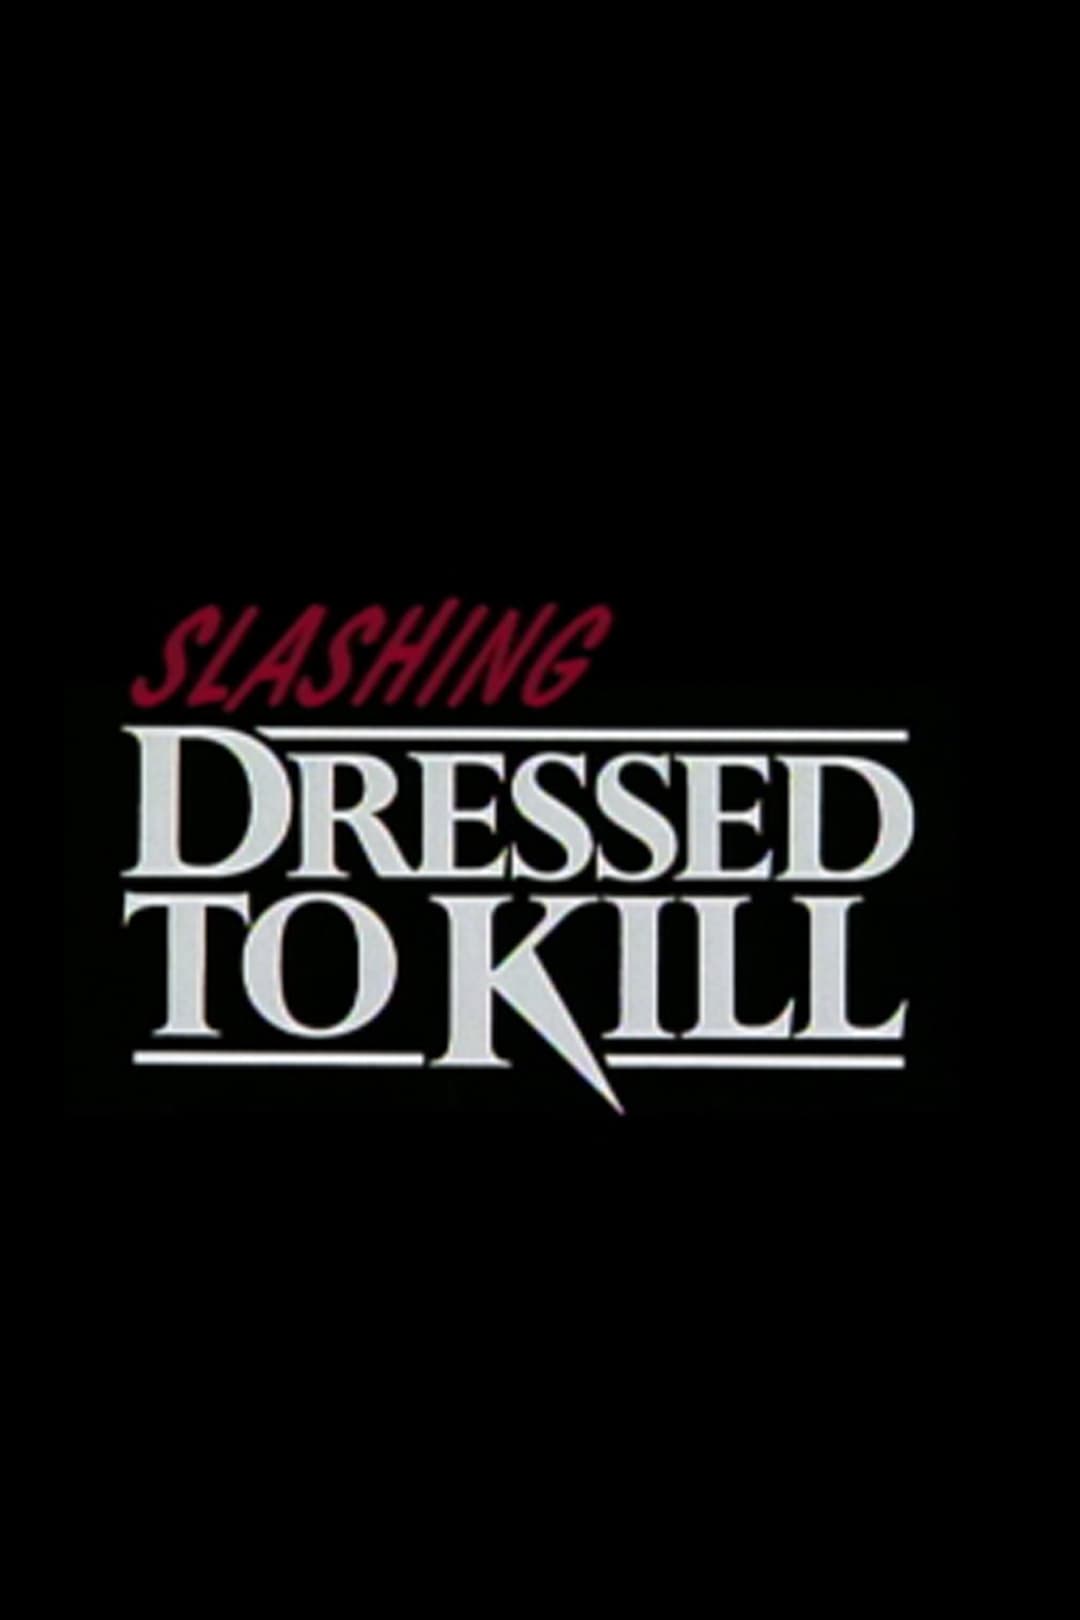 Slashing 'Dressed to Kill'